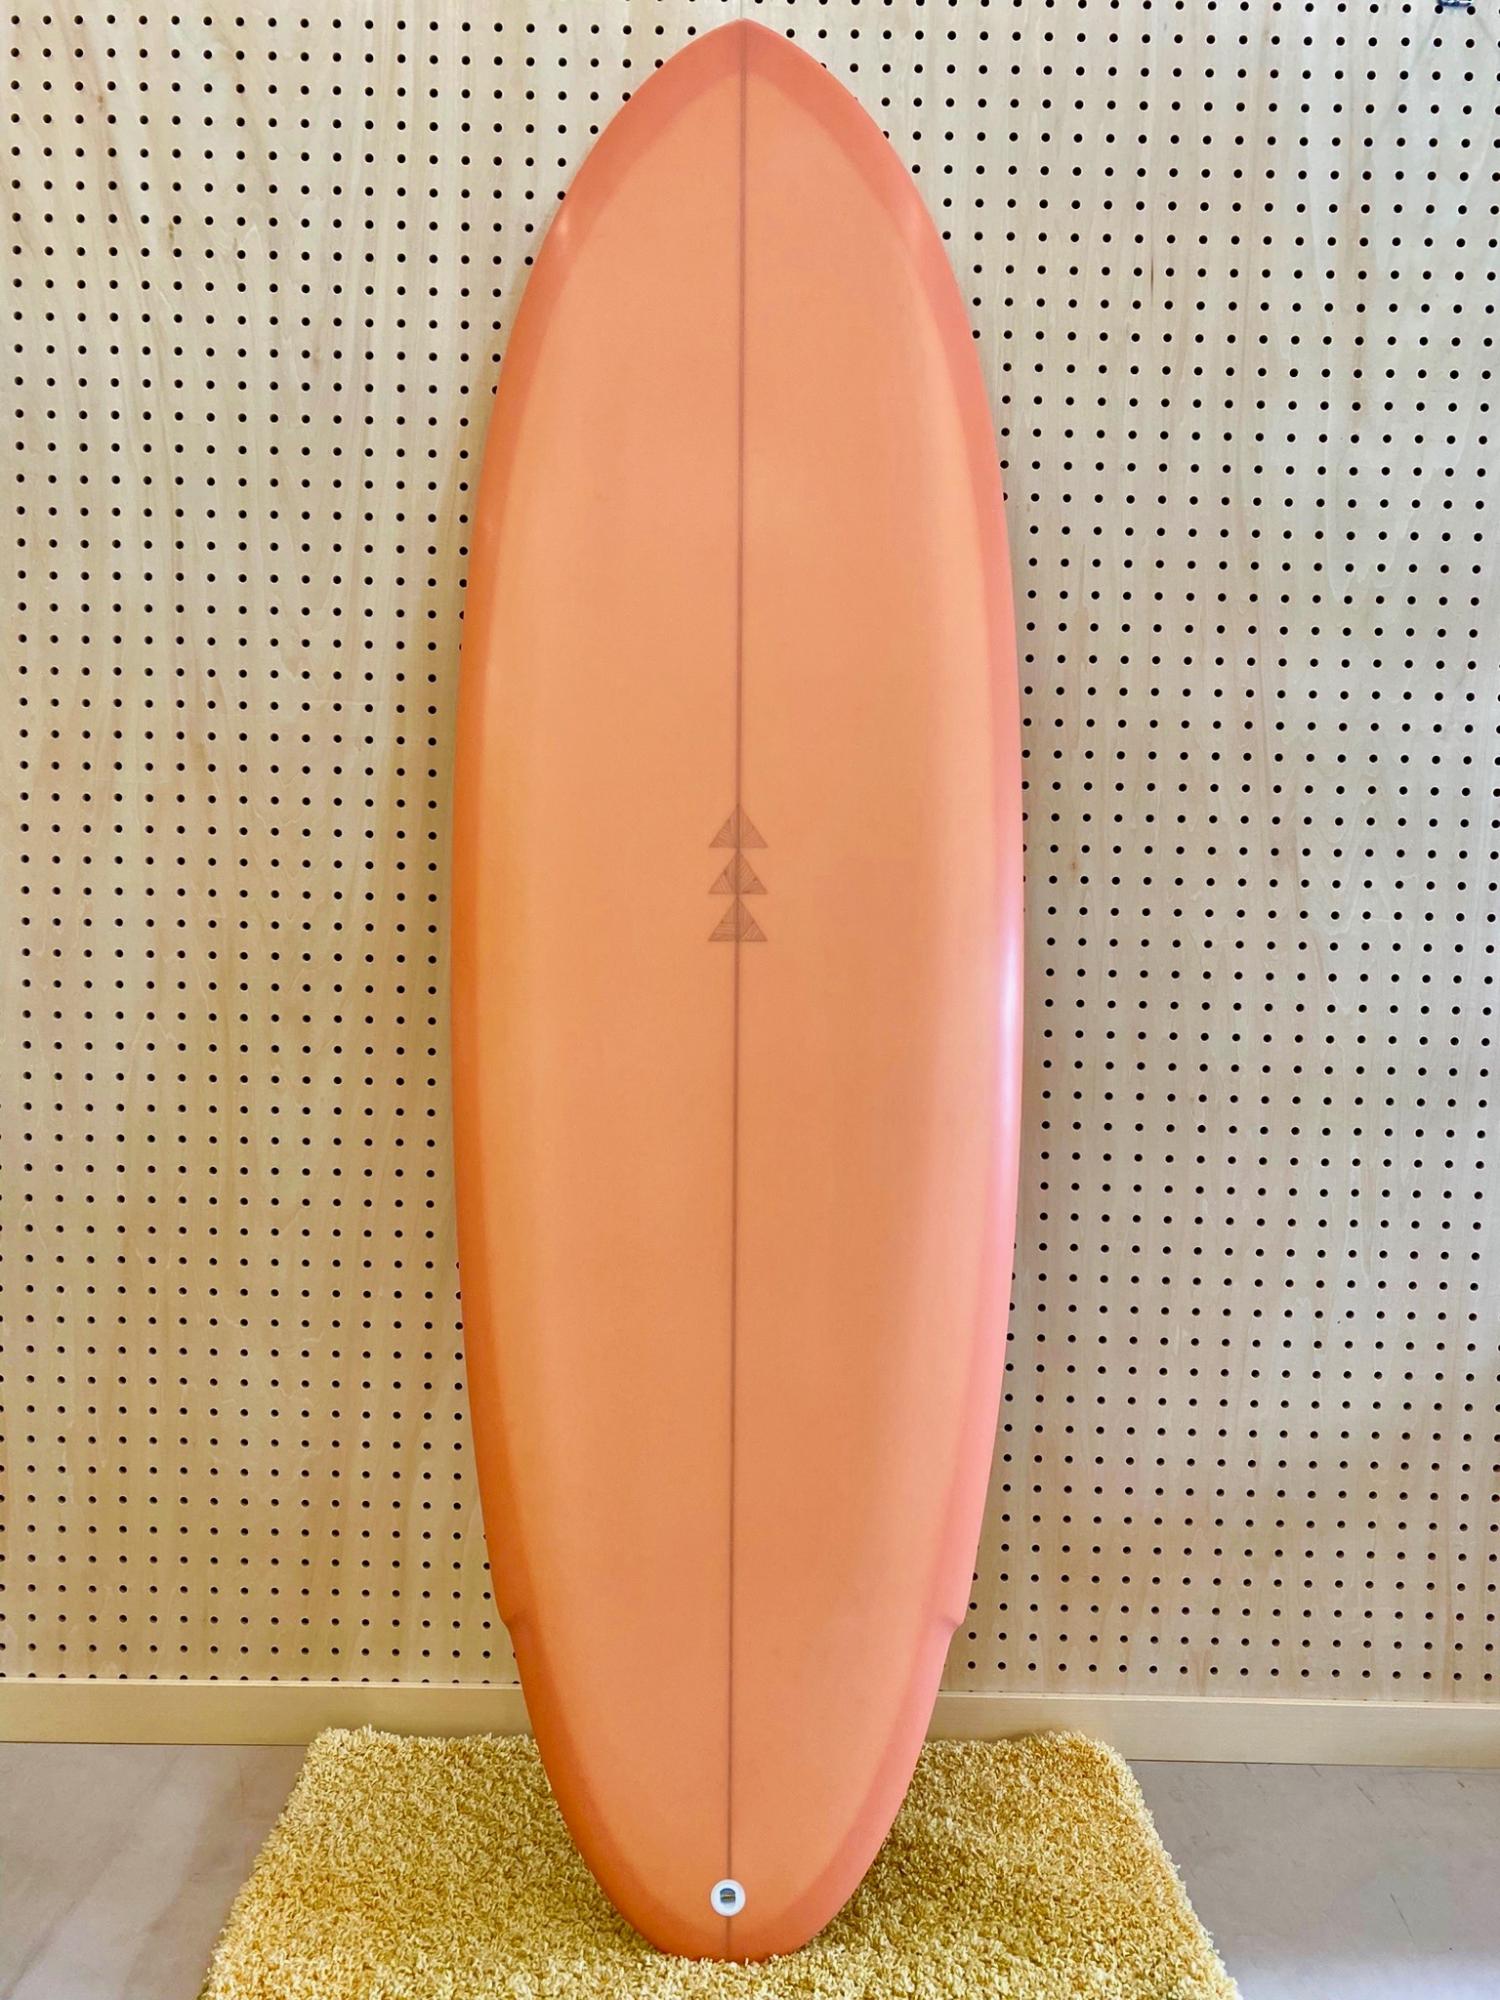 FLOYD PEPPER 5.6 FURROW SURF CRAFT